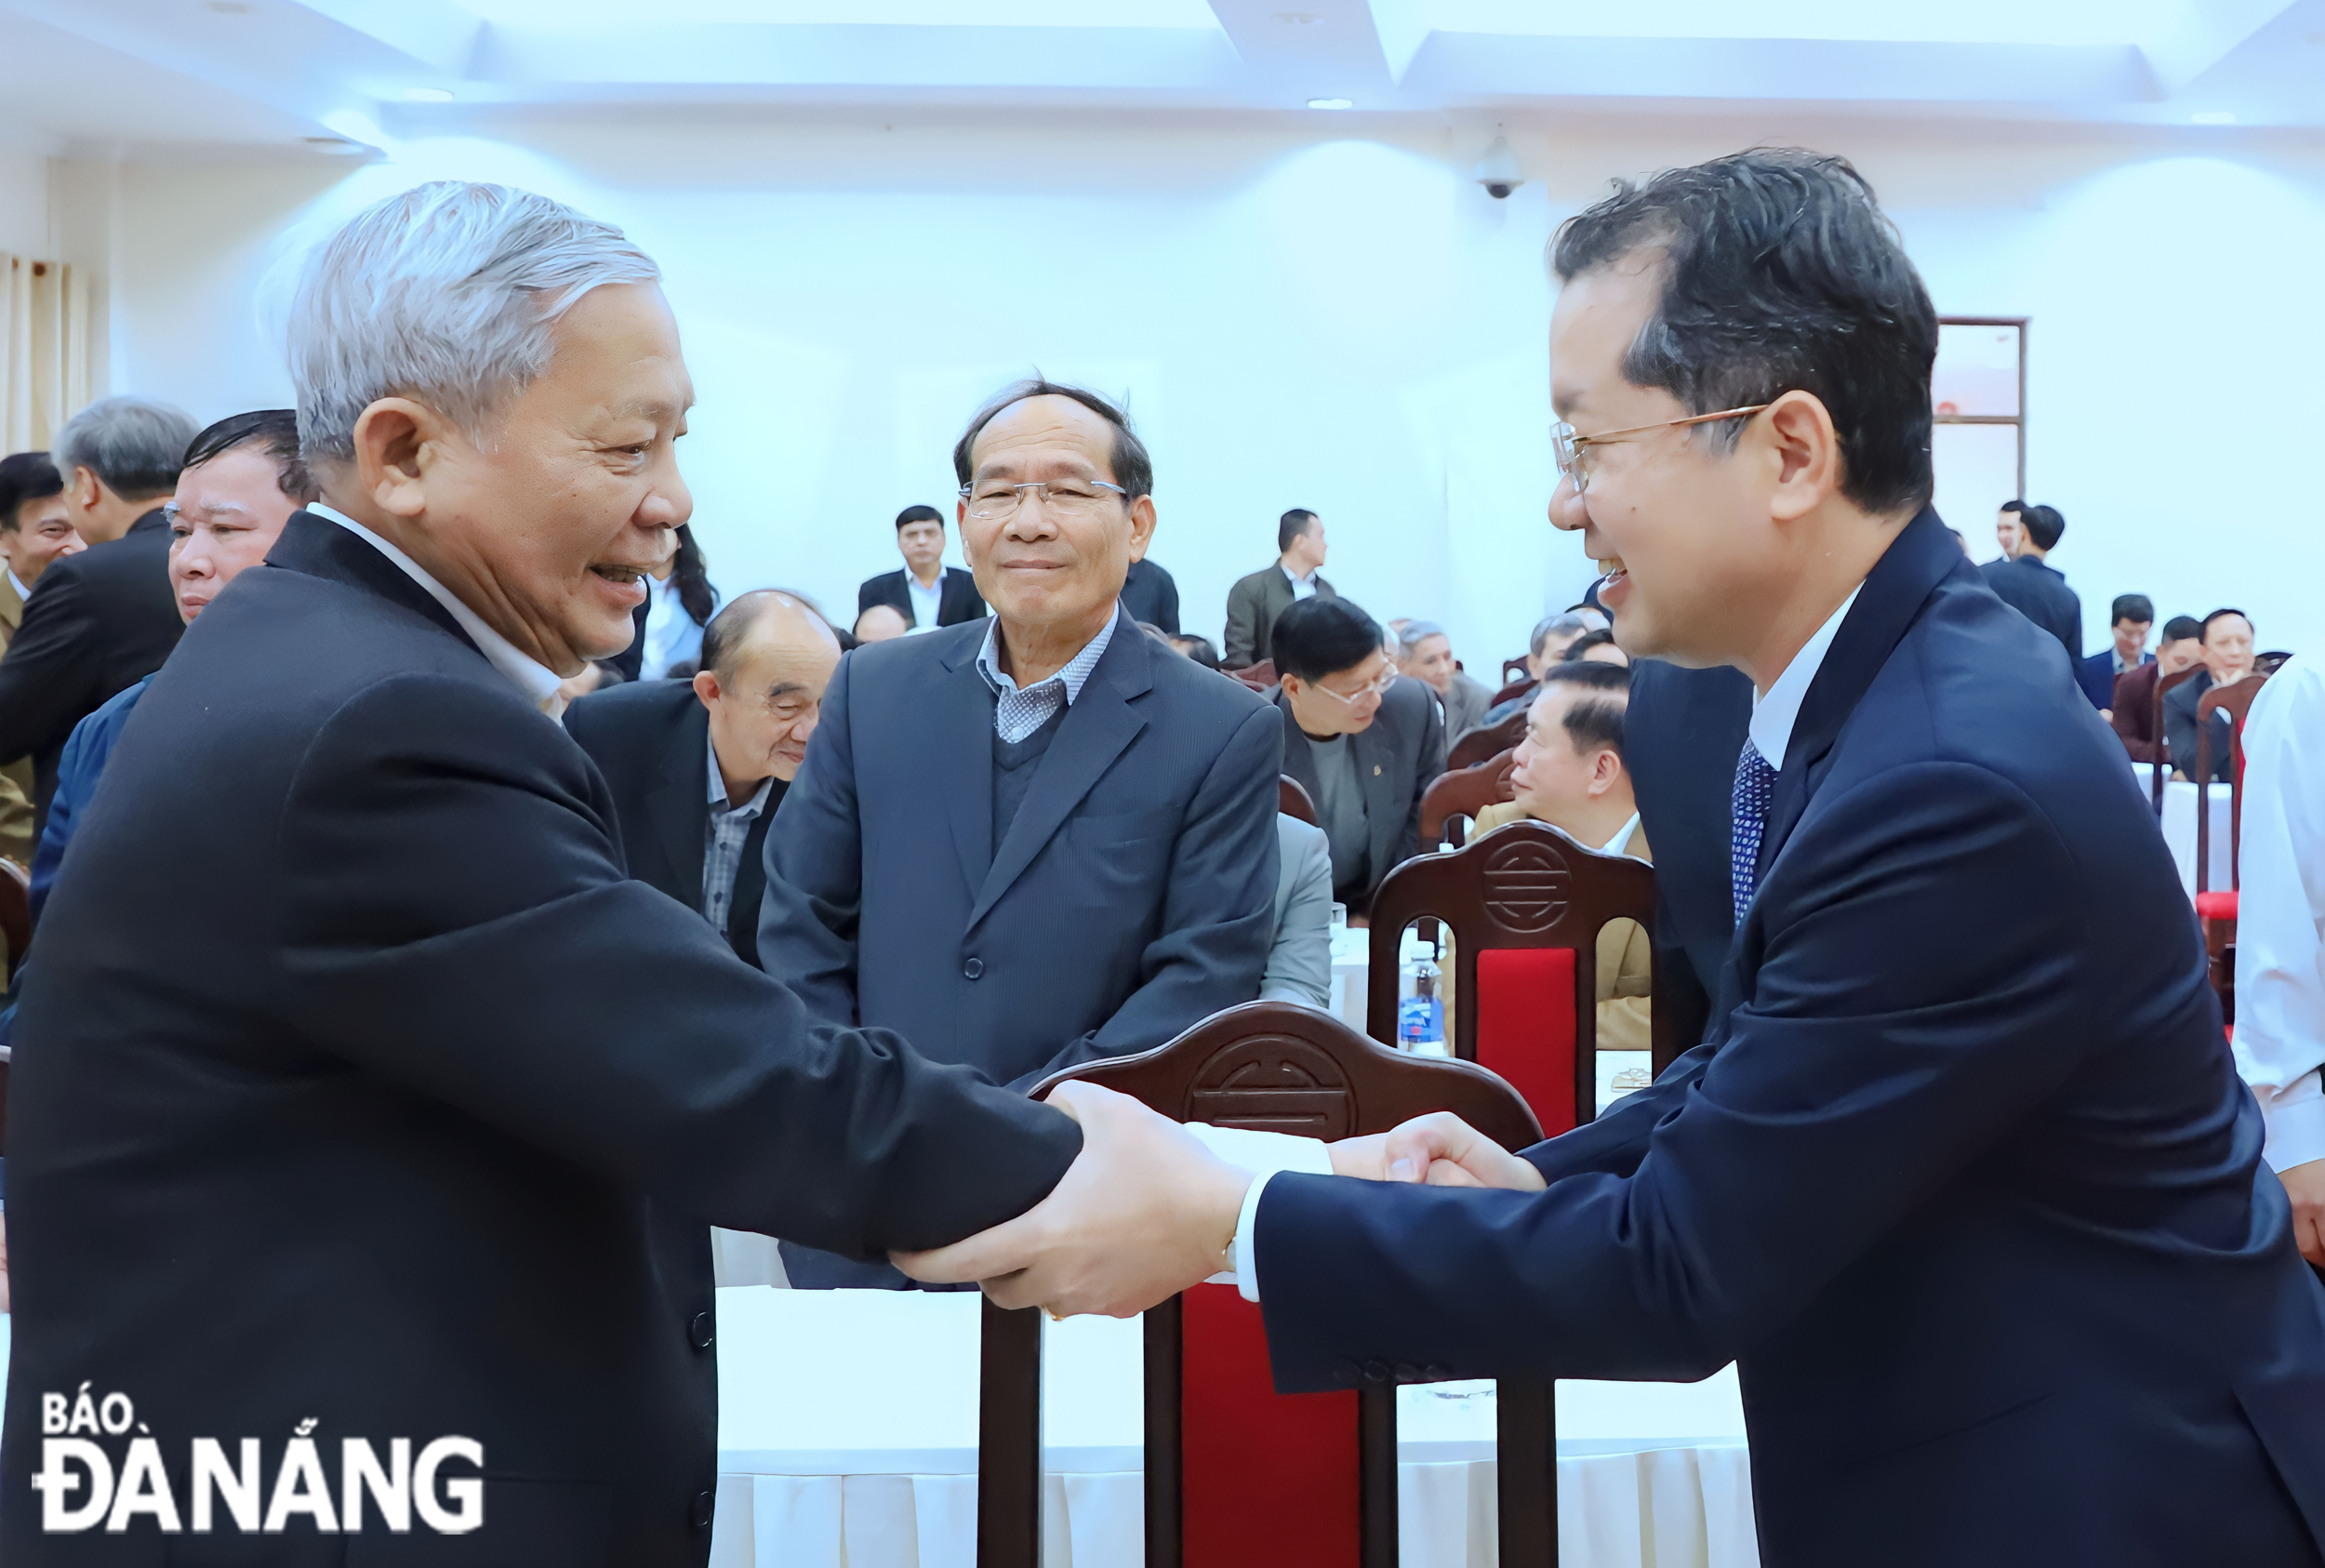 Bí thư Thành ủy Nguyễn Văn Quảng thăm hỏi các cán bộ hưu trí cao cấp. Ảnh: NGỌC PHÚ